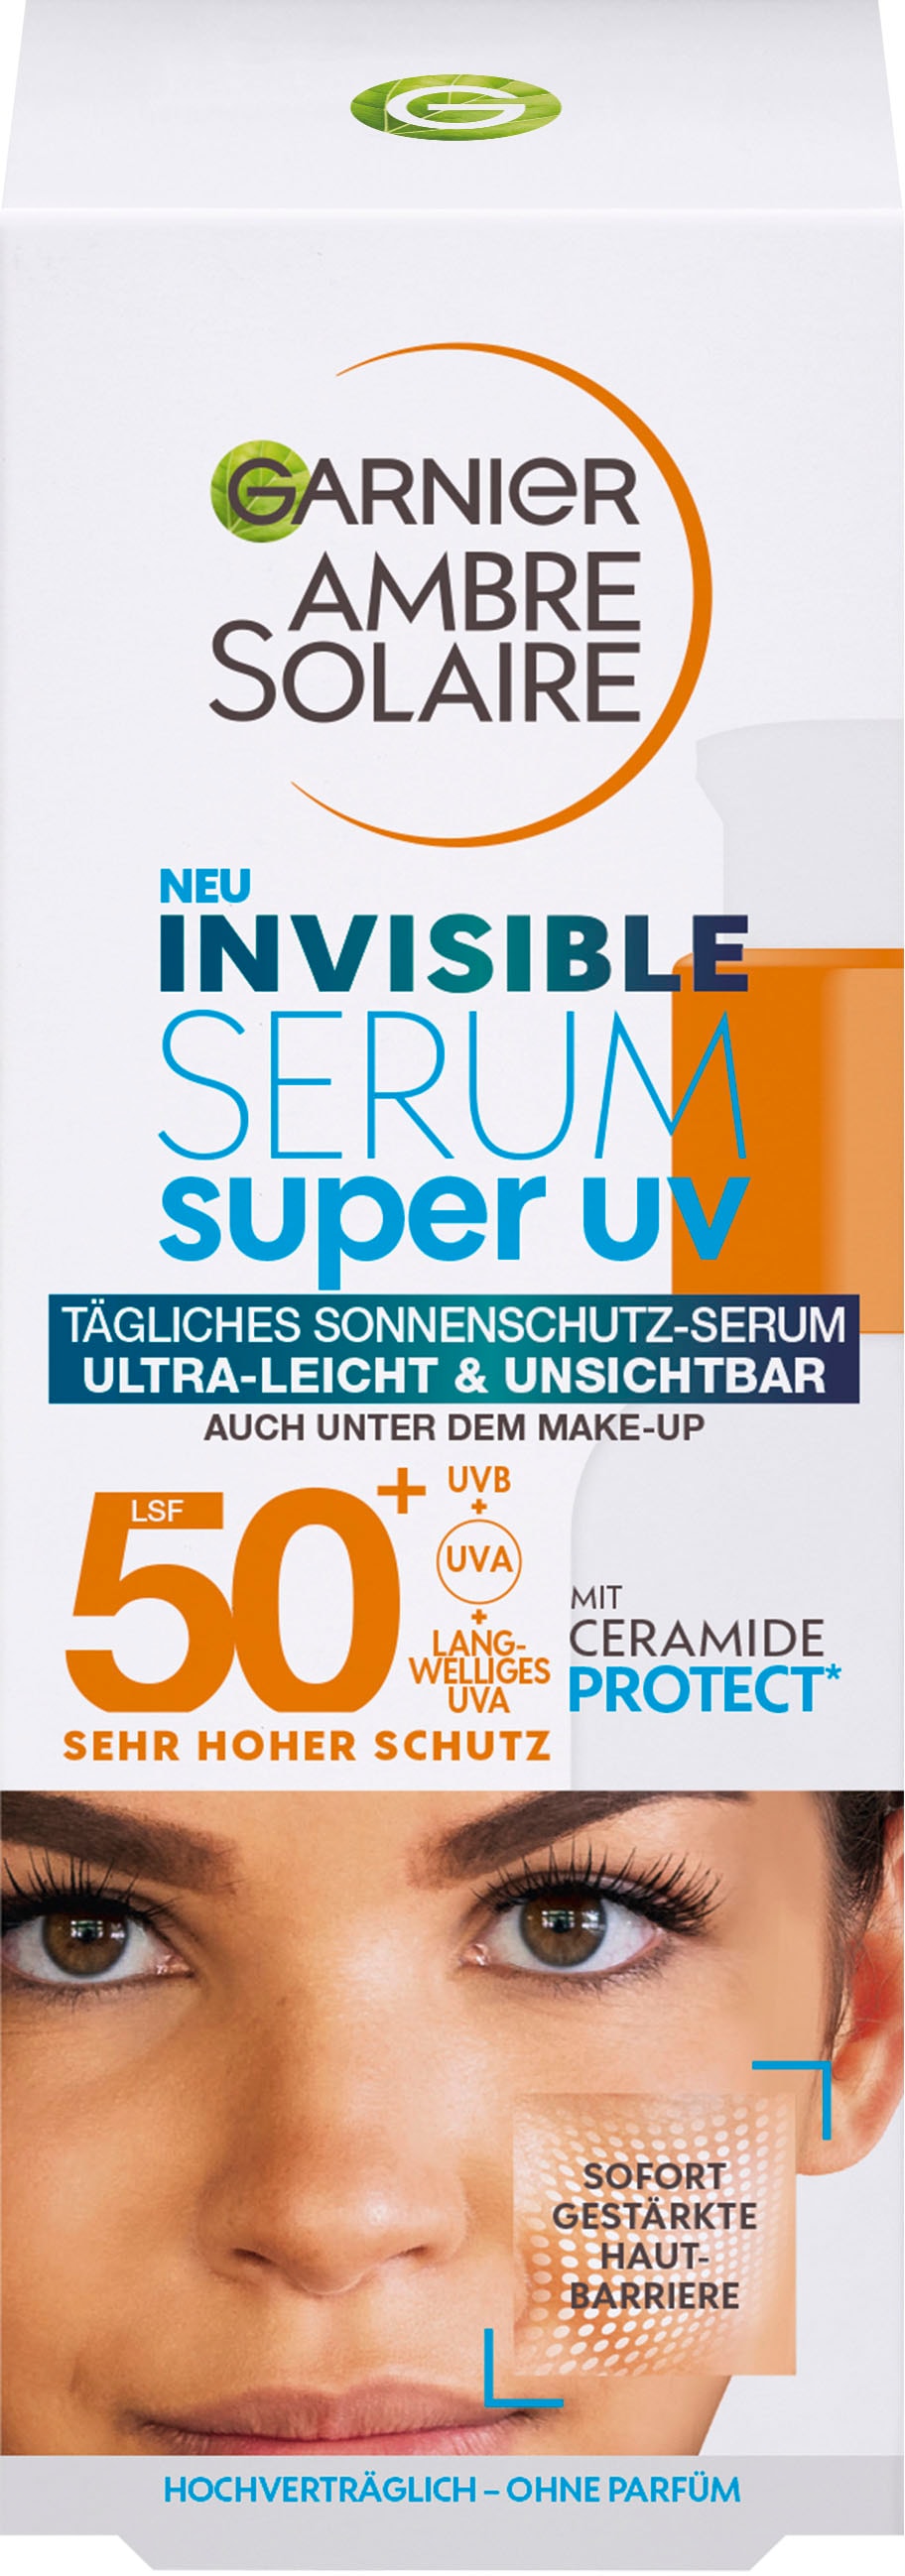 GARNIER Gesichtsserum | online Sonnenschutz-Serum« Super UV UNIVERSAL bestellen »Garnier